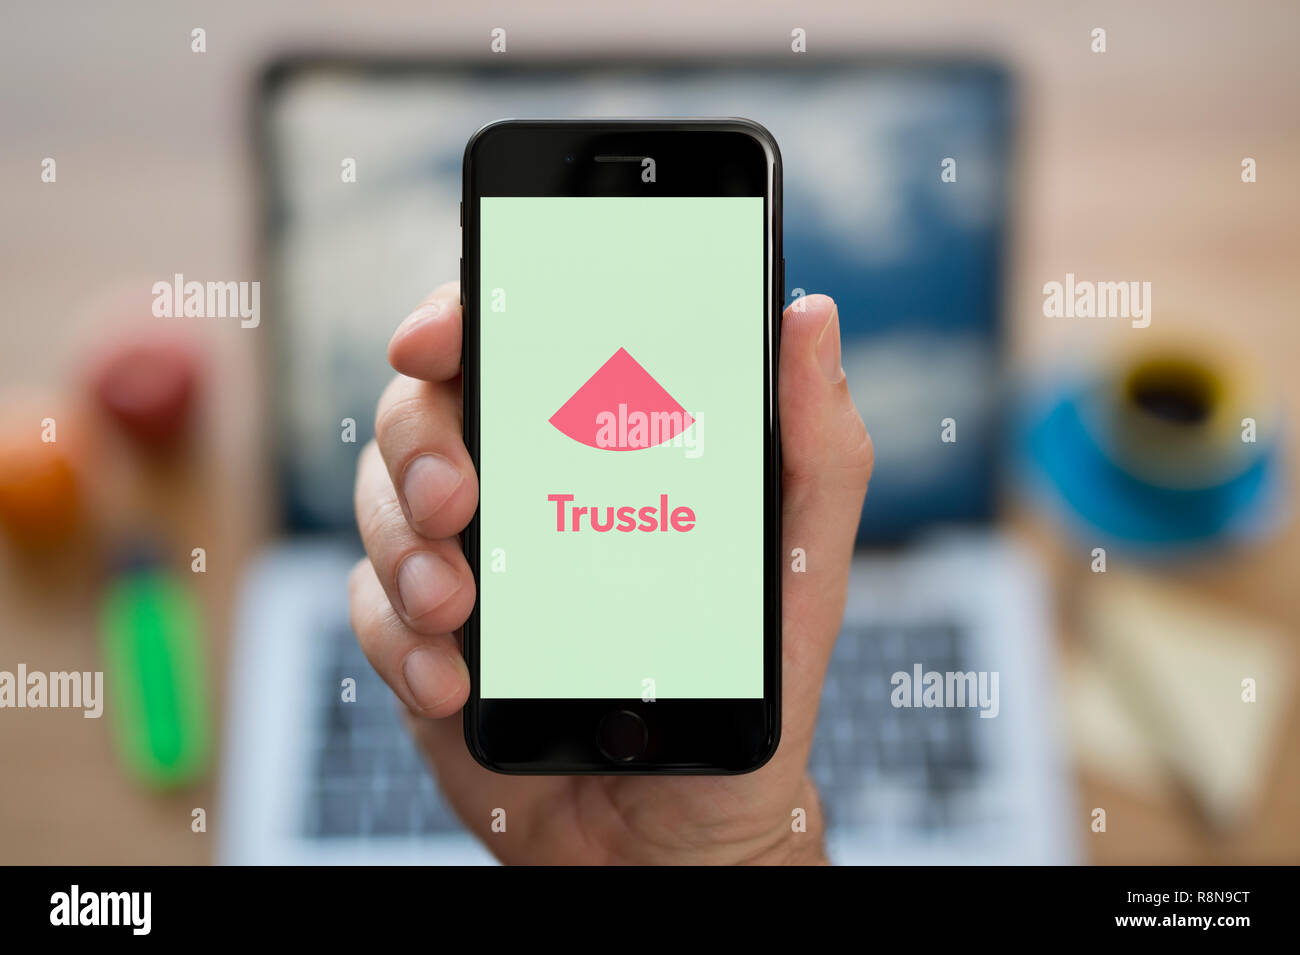 Ein Mann schaut auf seinem iPhone die zeigt die Trussle Logo (nur redaktionelle Nutzung). Stockfoto